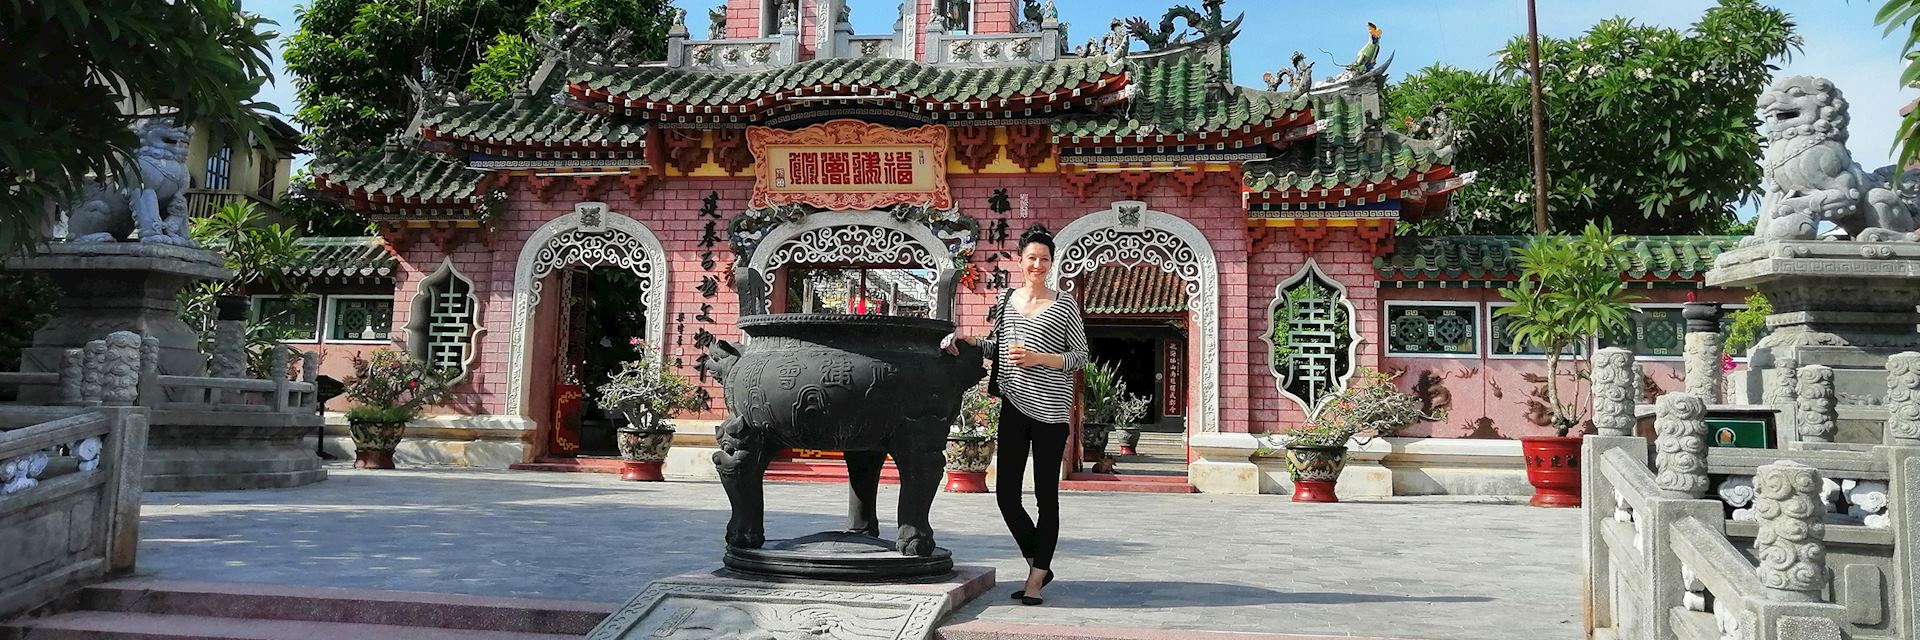 Louisa at Quan Cong Temple, Hoi An, Vietnam